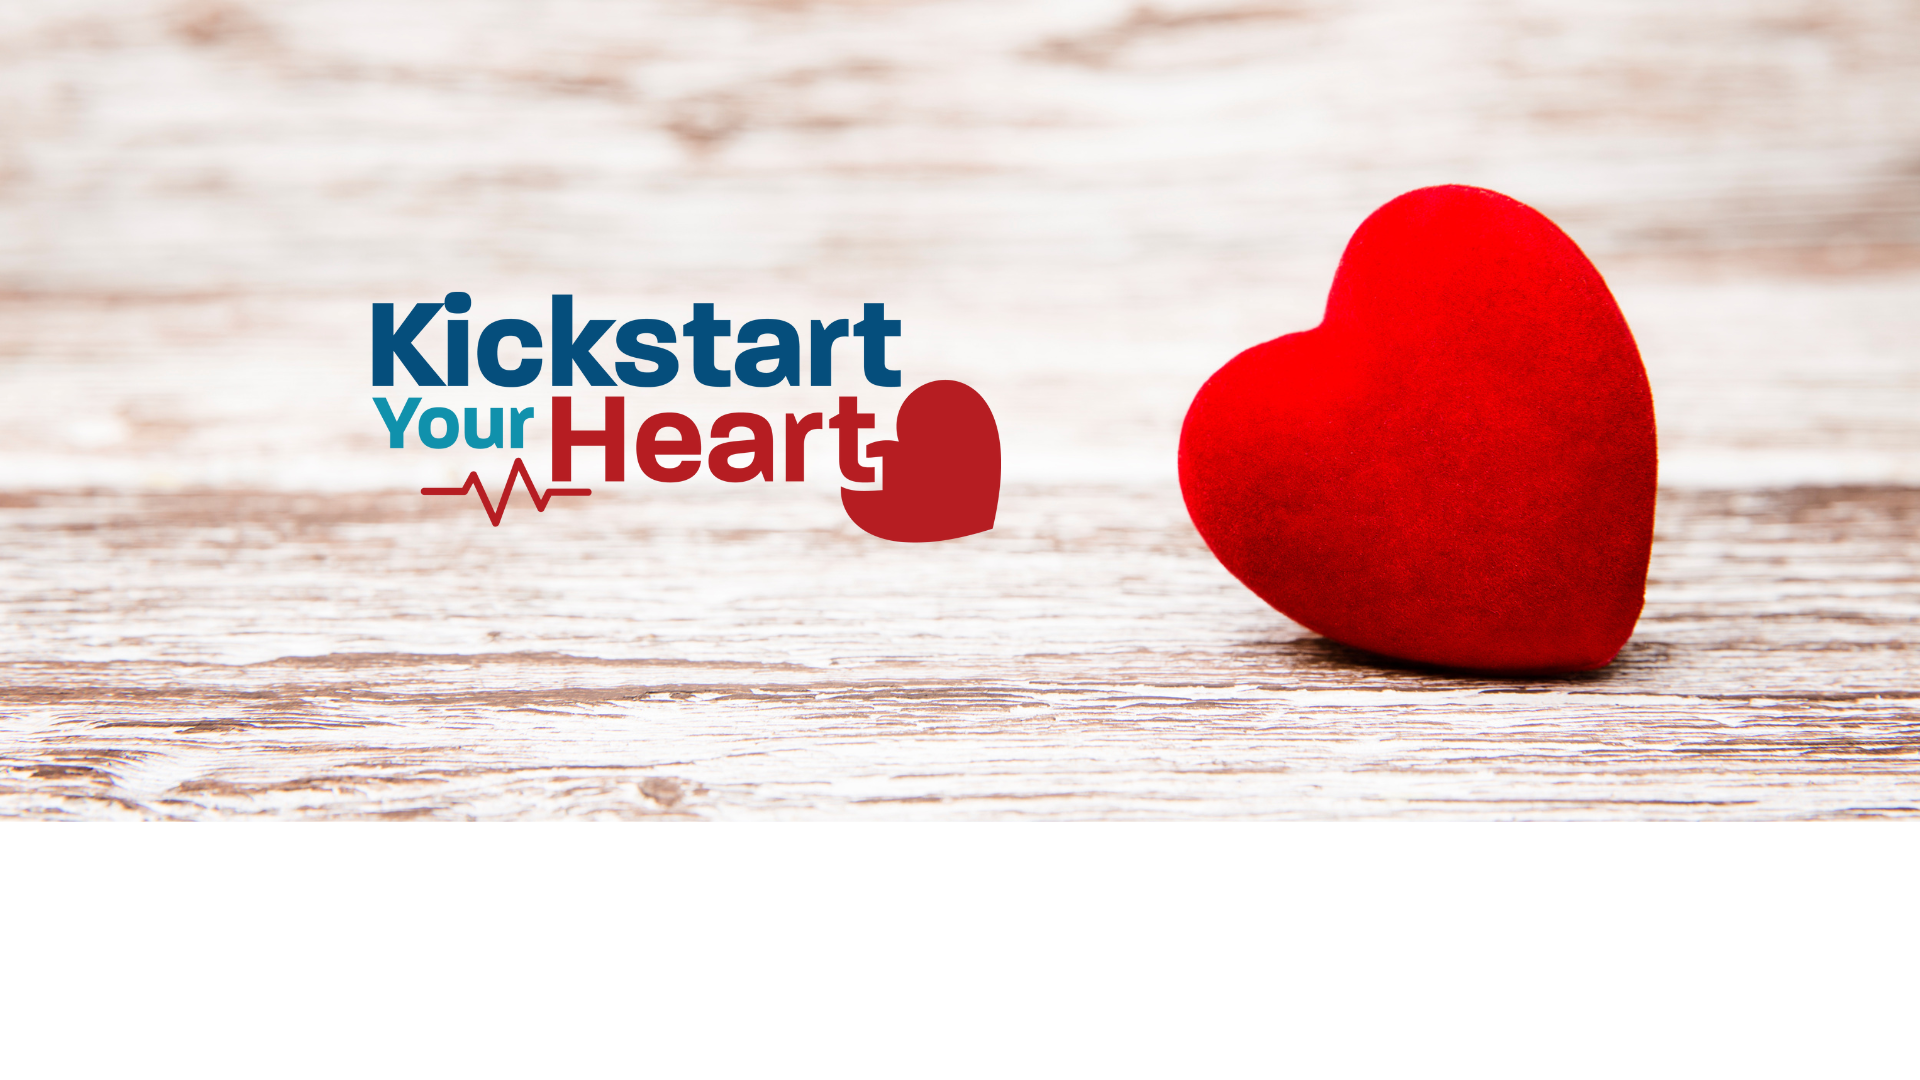 Kickstart Your Heart – Coxworth & Associates